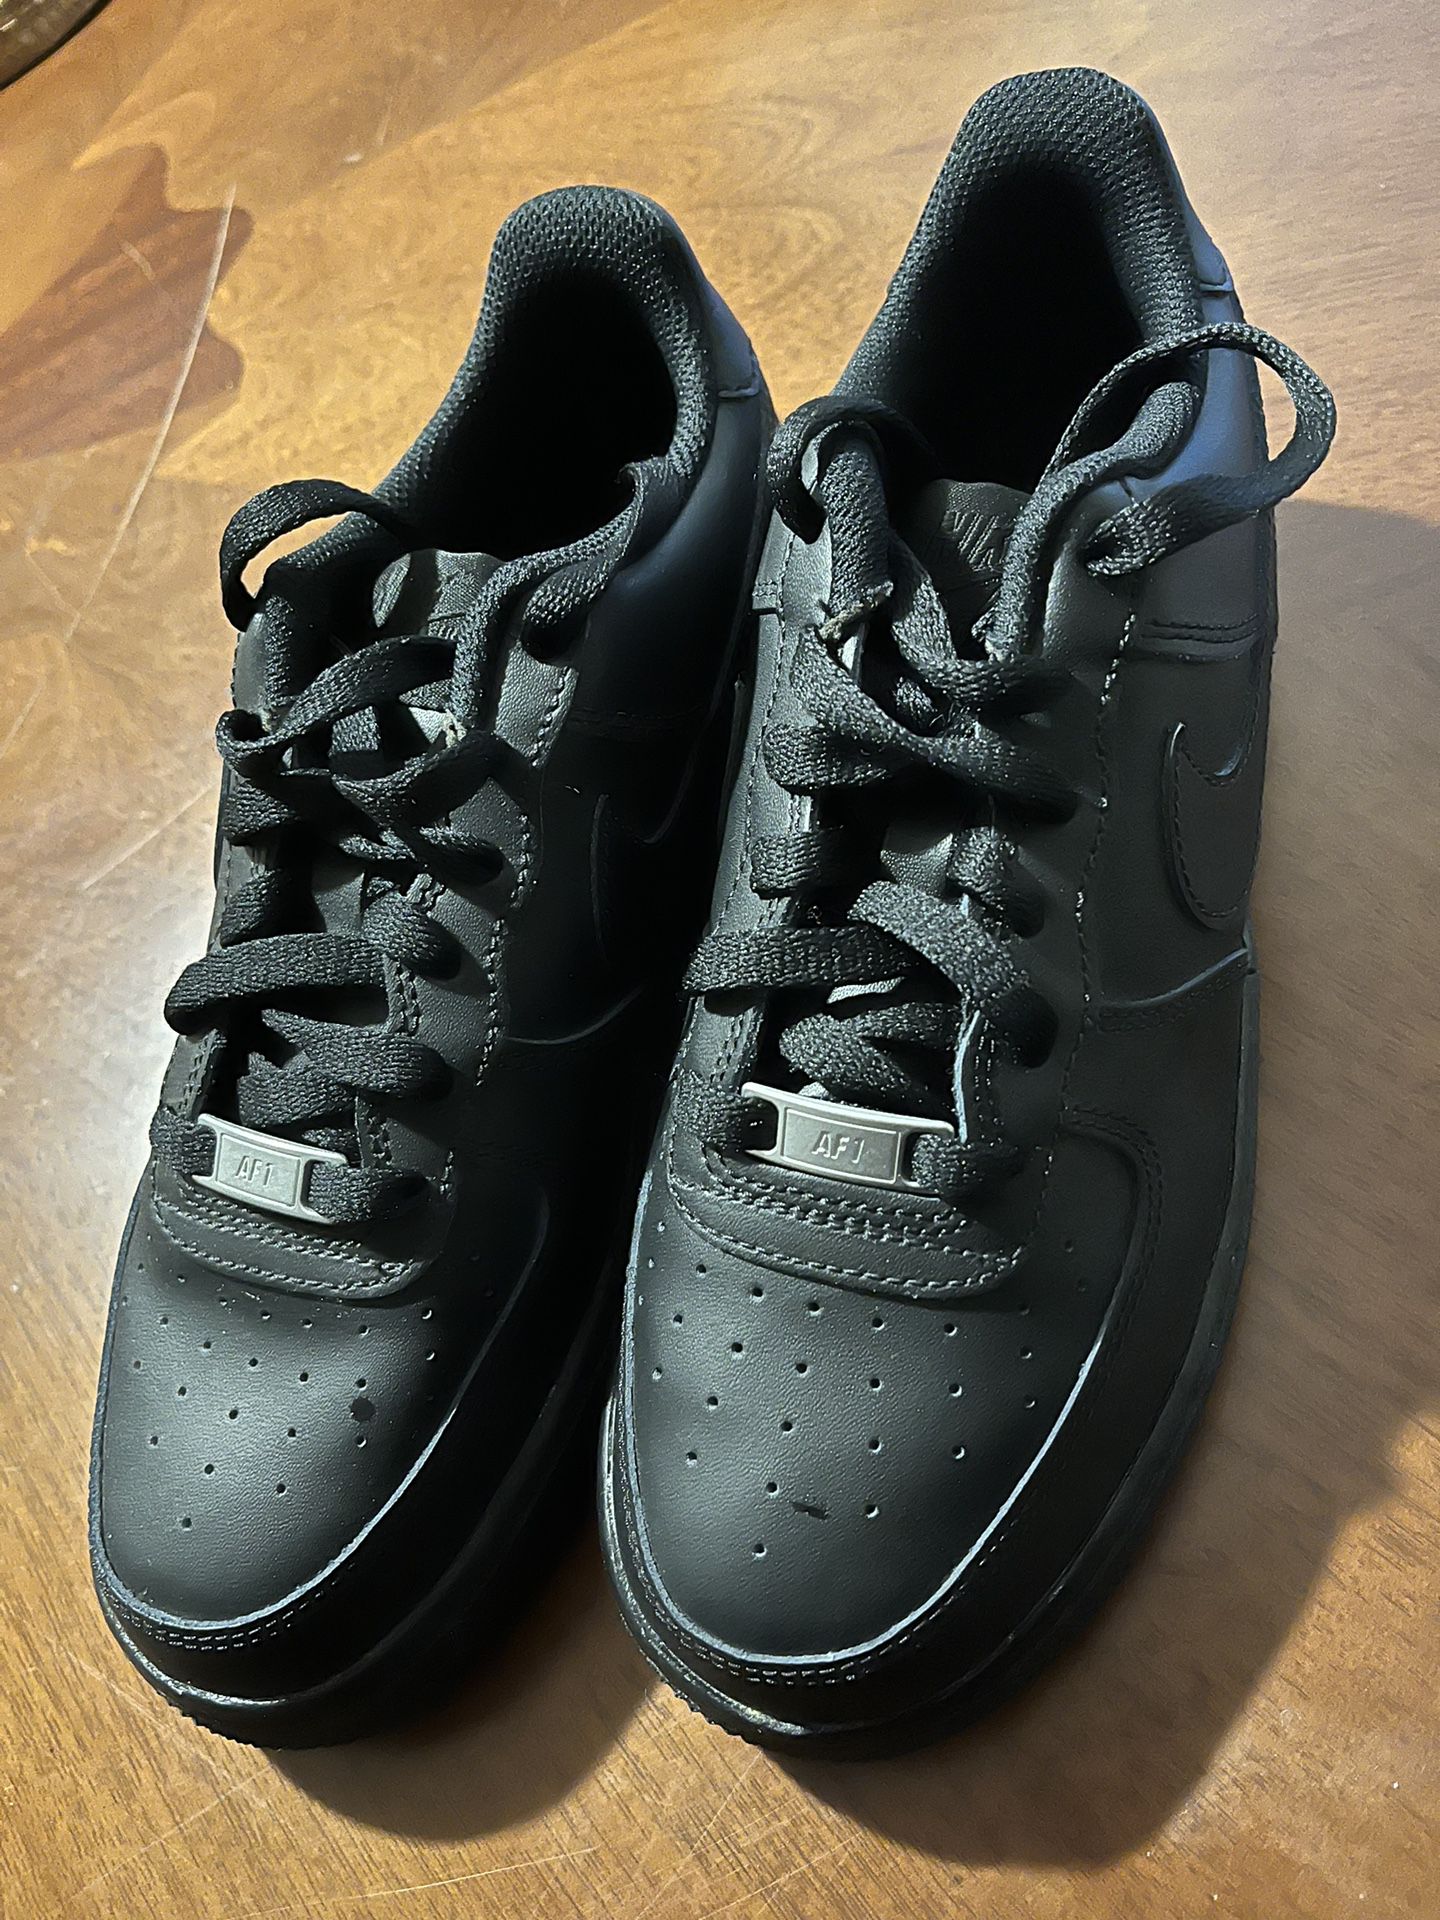 Black Nike Air Force 1s